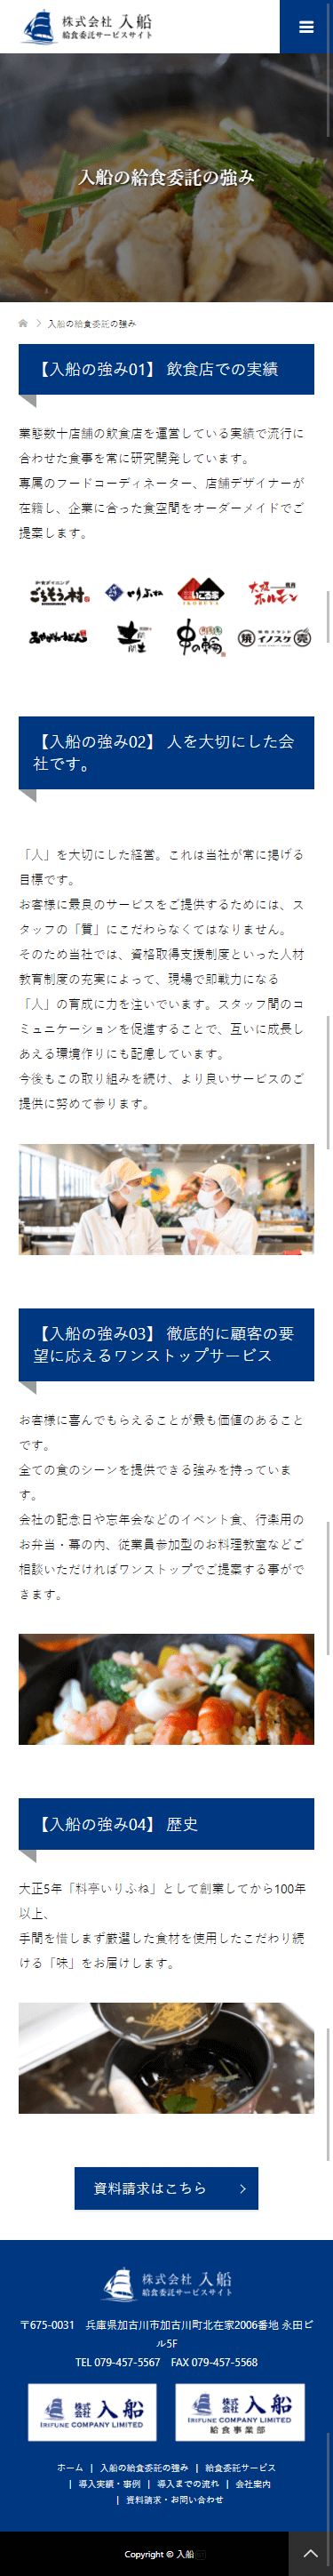 加古川市 株式会社入船 給食委託専門サイト ホームページ制作4